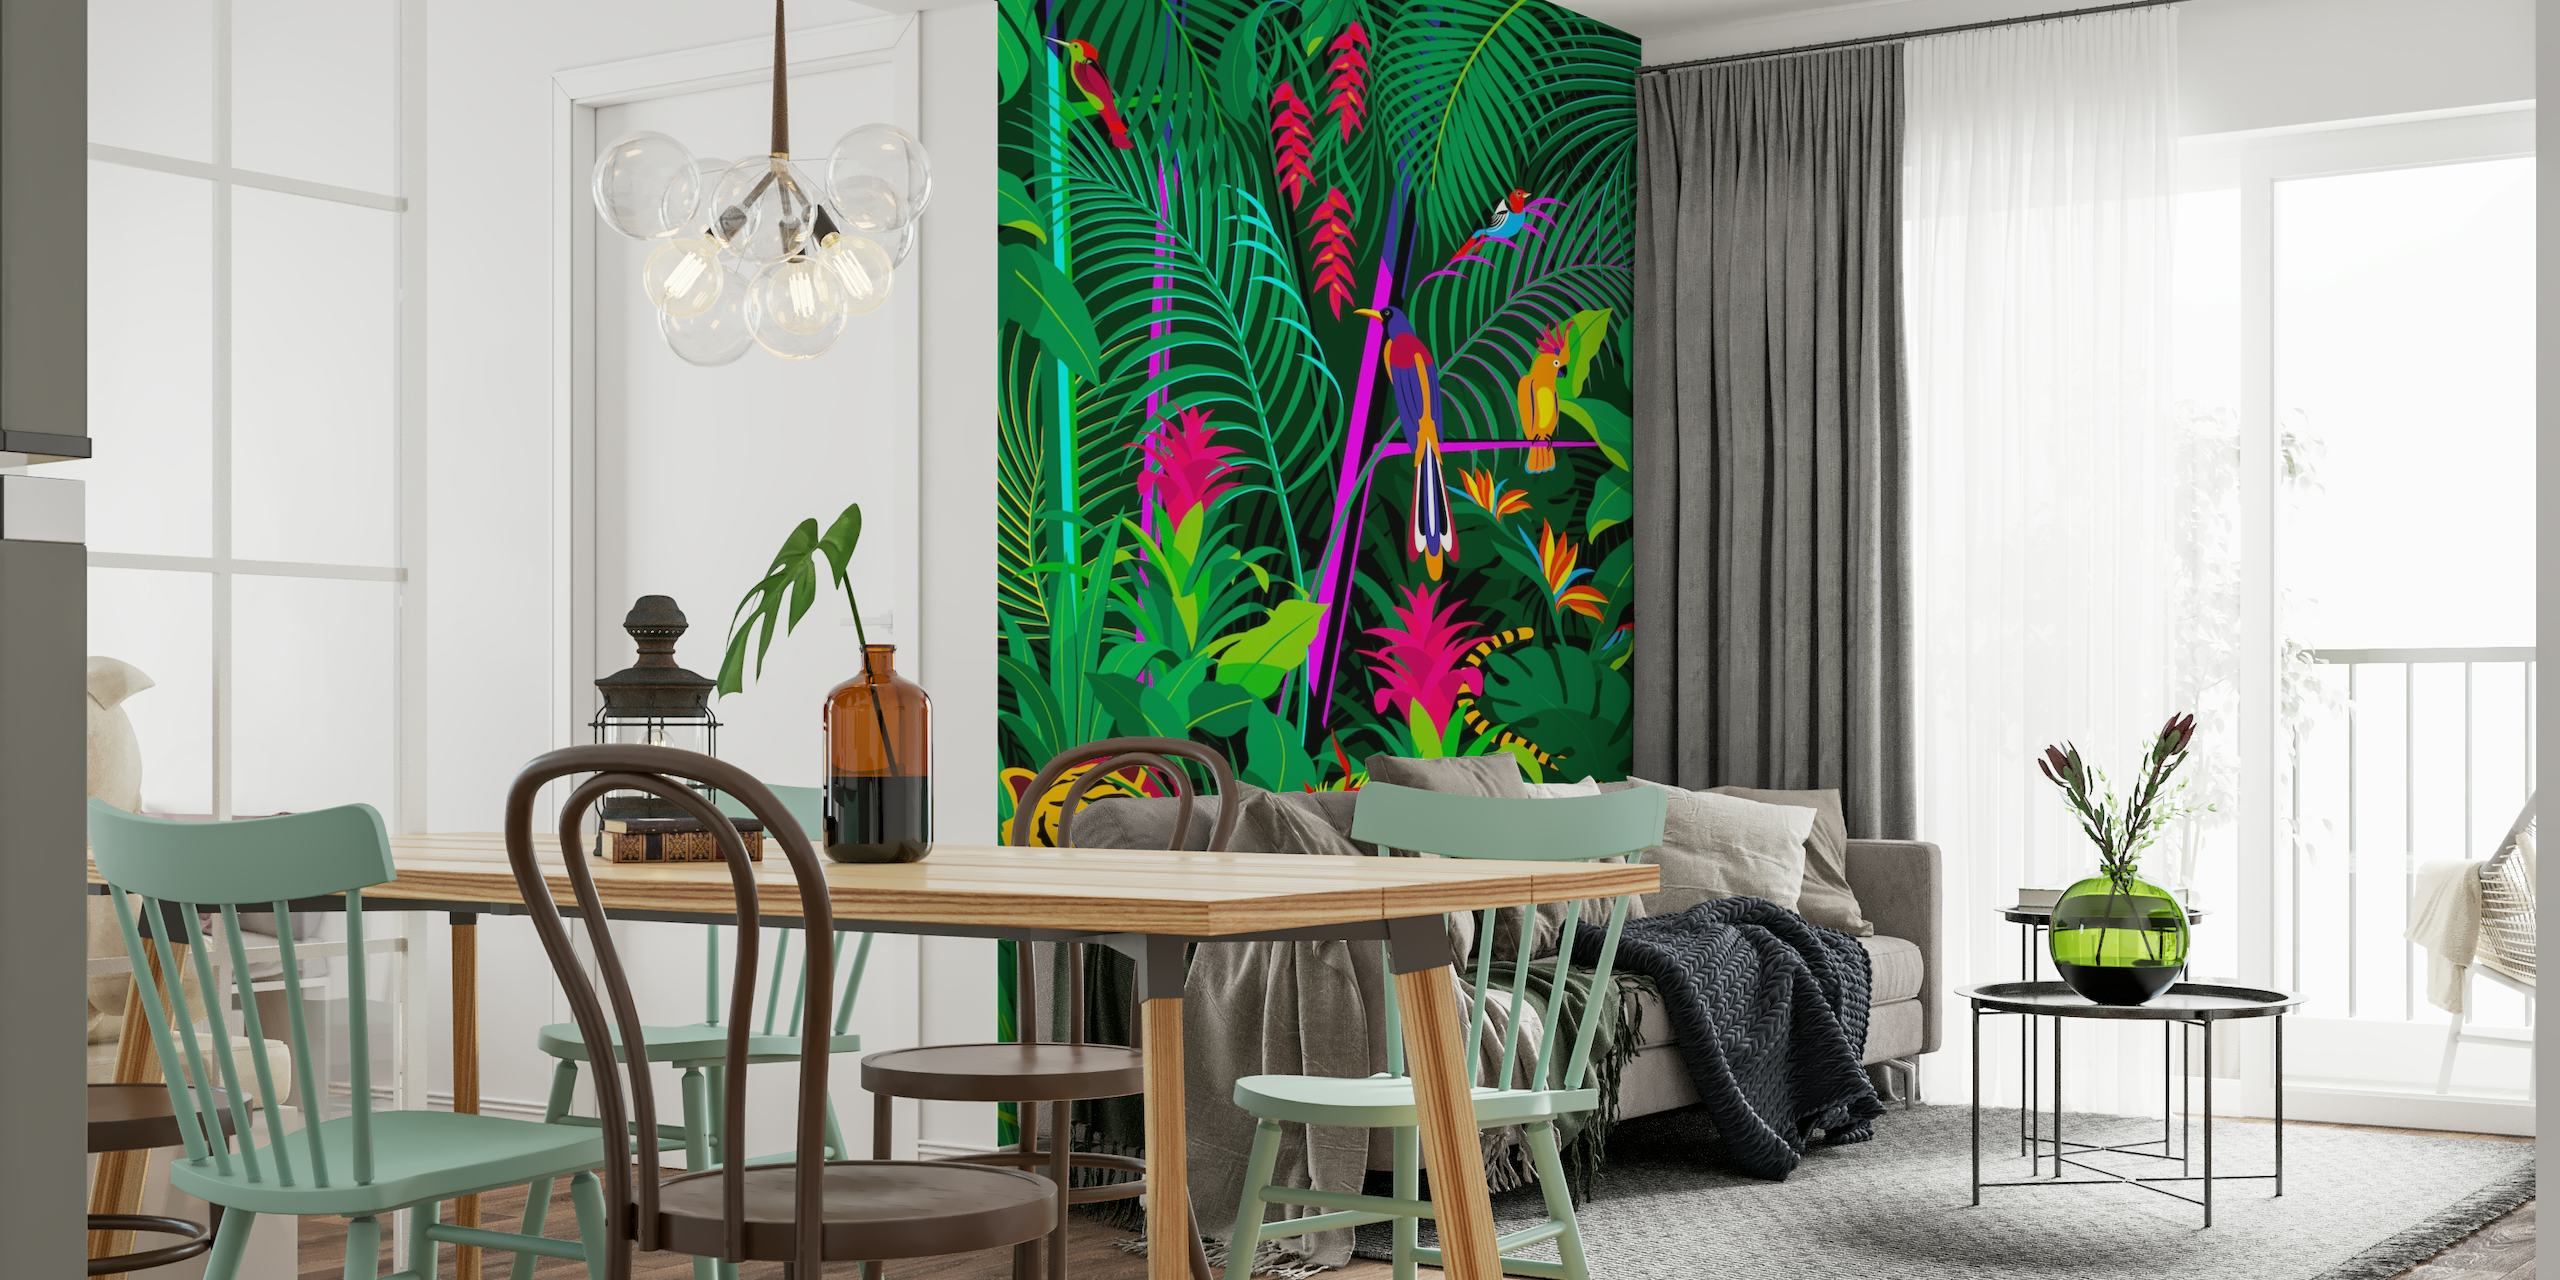 Veggmaleri i tropisk jungel med tett grønt løvverk, fargerike blomster og en skjult tiger